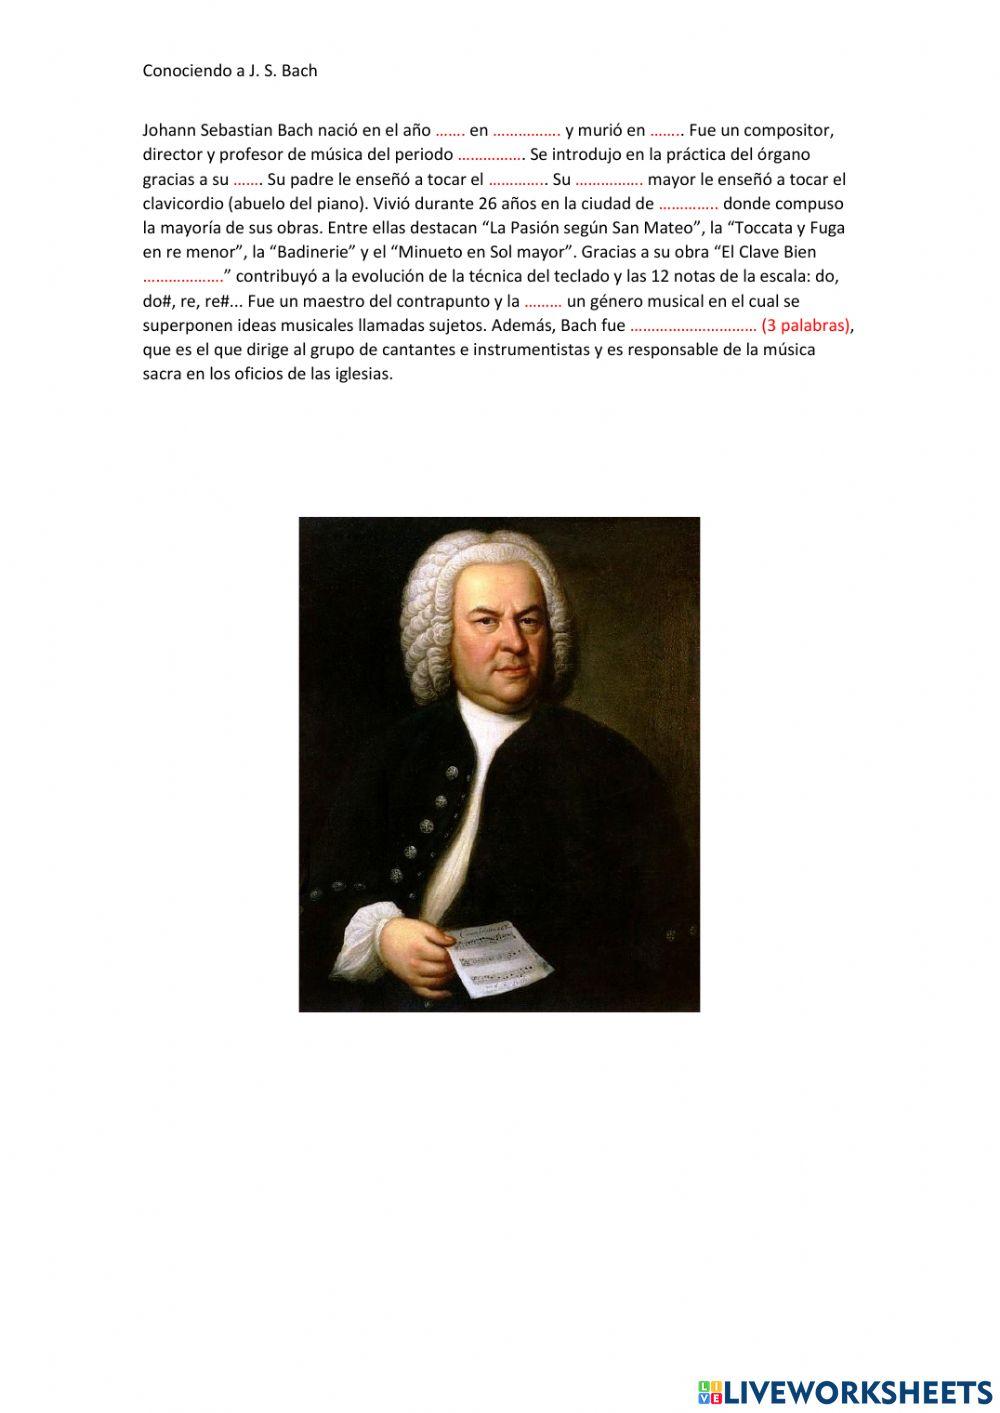 Conociendo a J.S. Bach